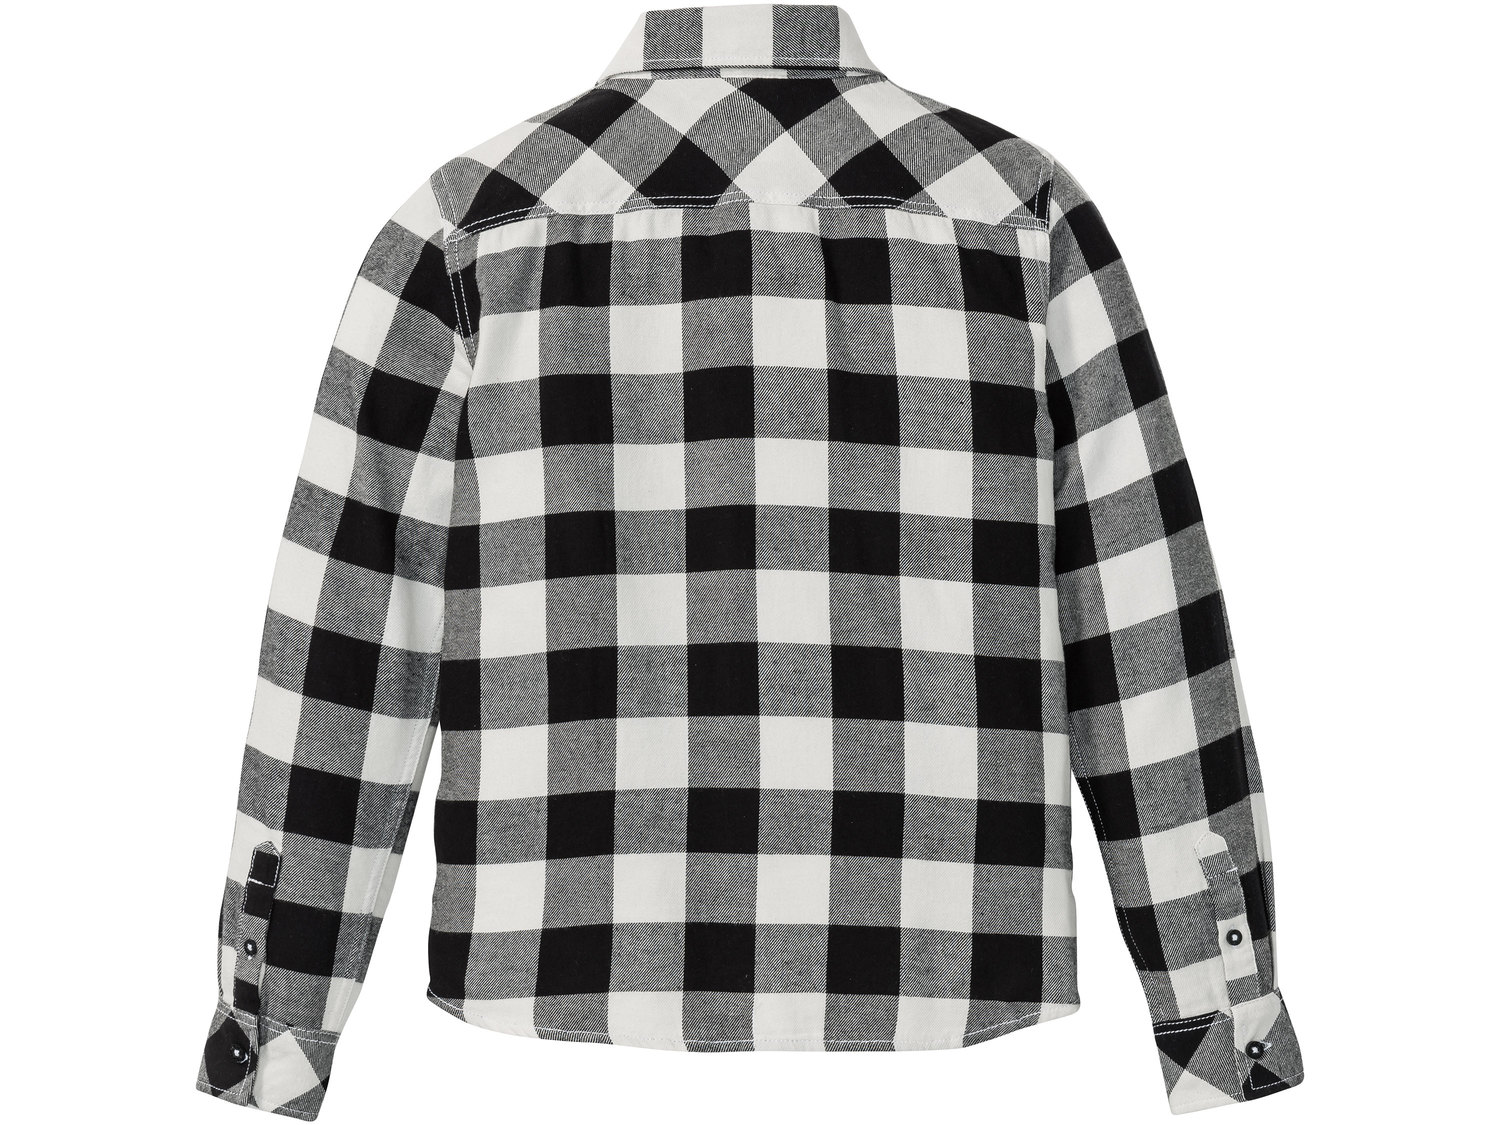 Koszula flanelowa Pepperts, cena 29,99 PLN 
- koszula flanelowa w kratkę to klasyczny ...